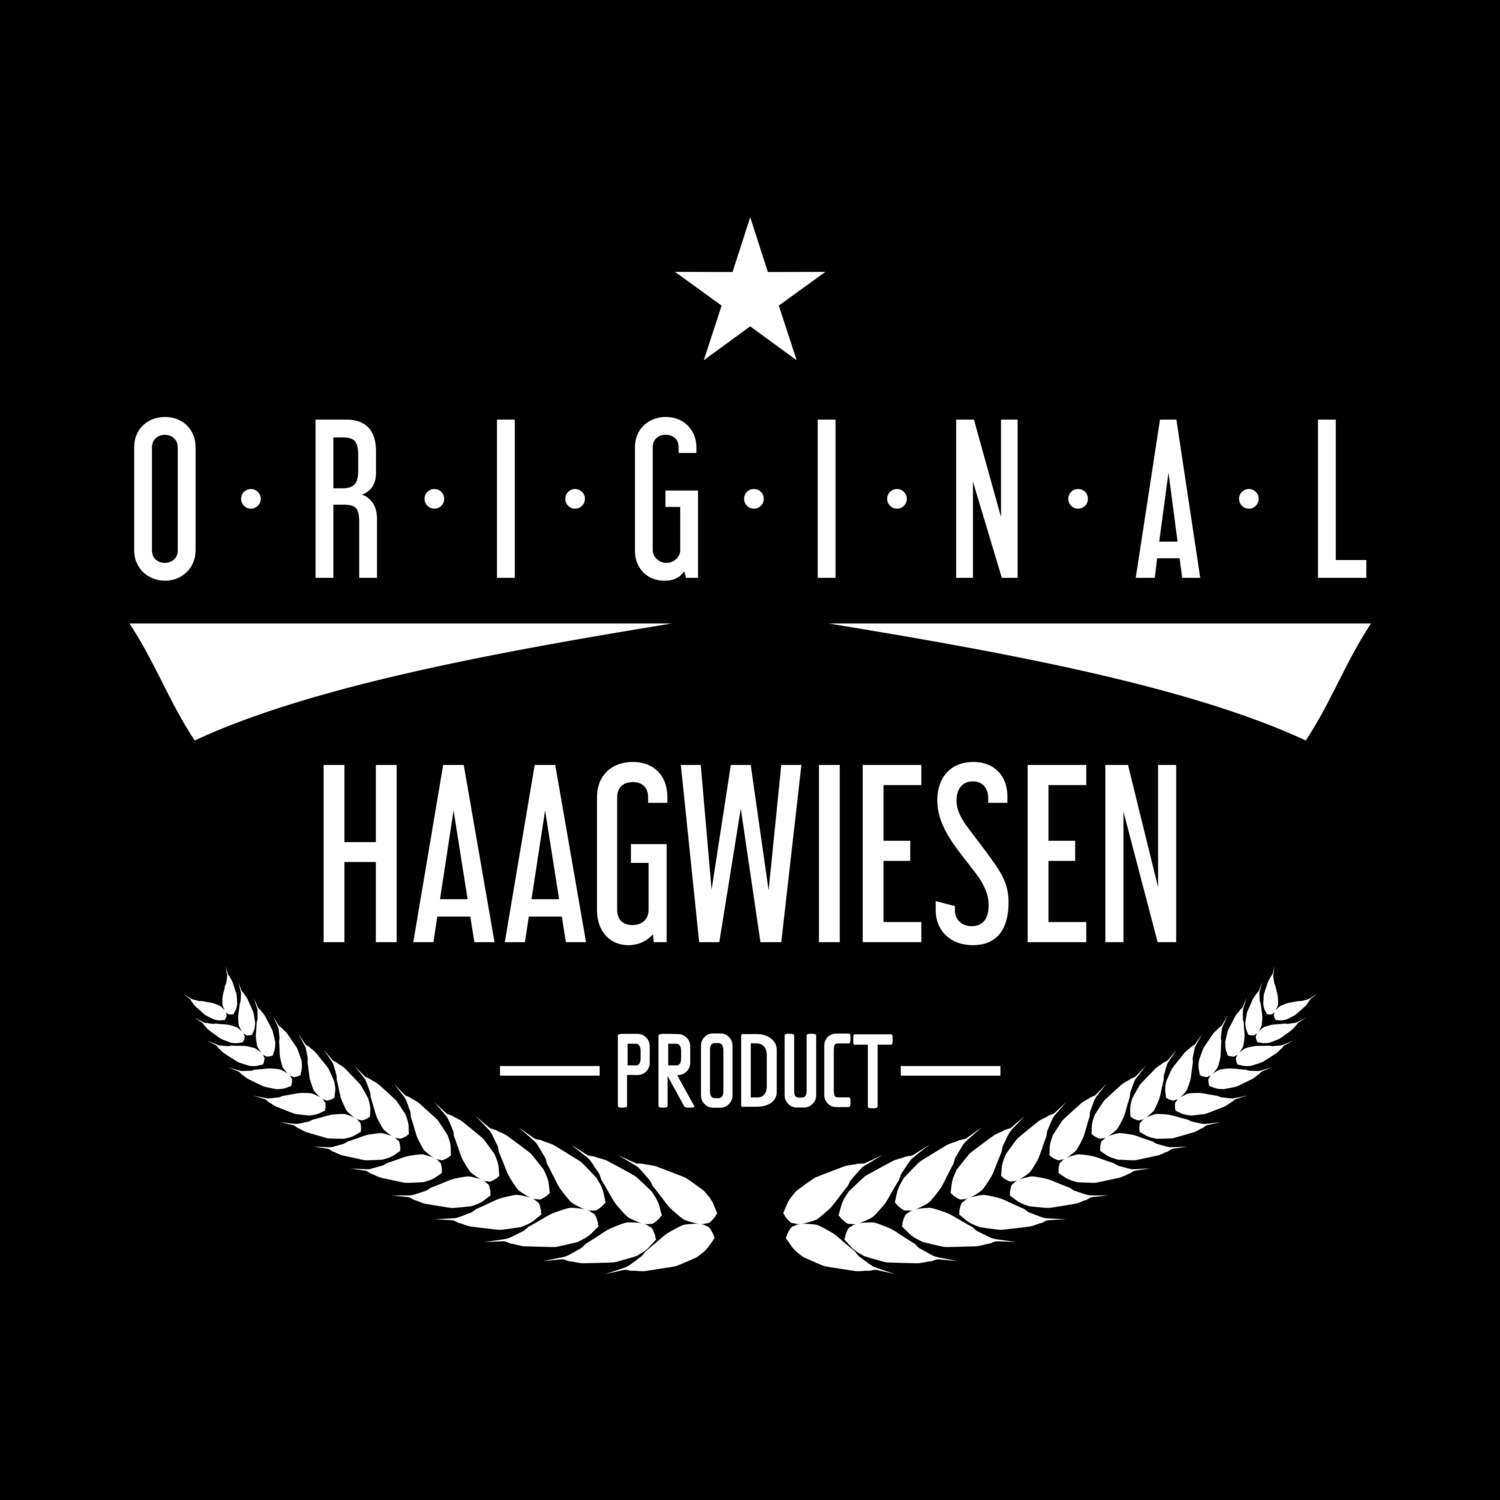 Haagwiesen T-Shirt »Original Product«